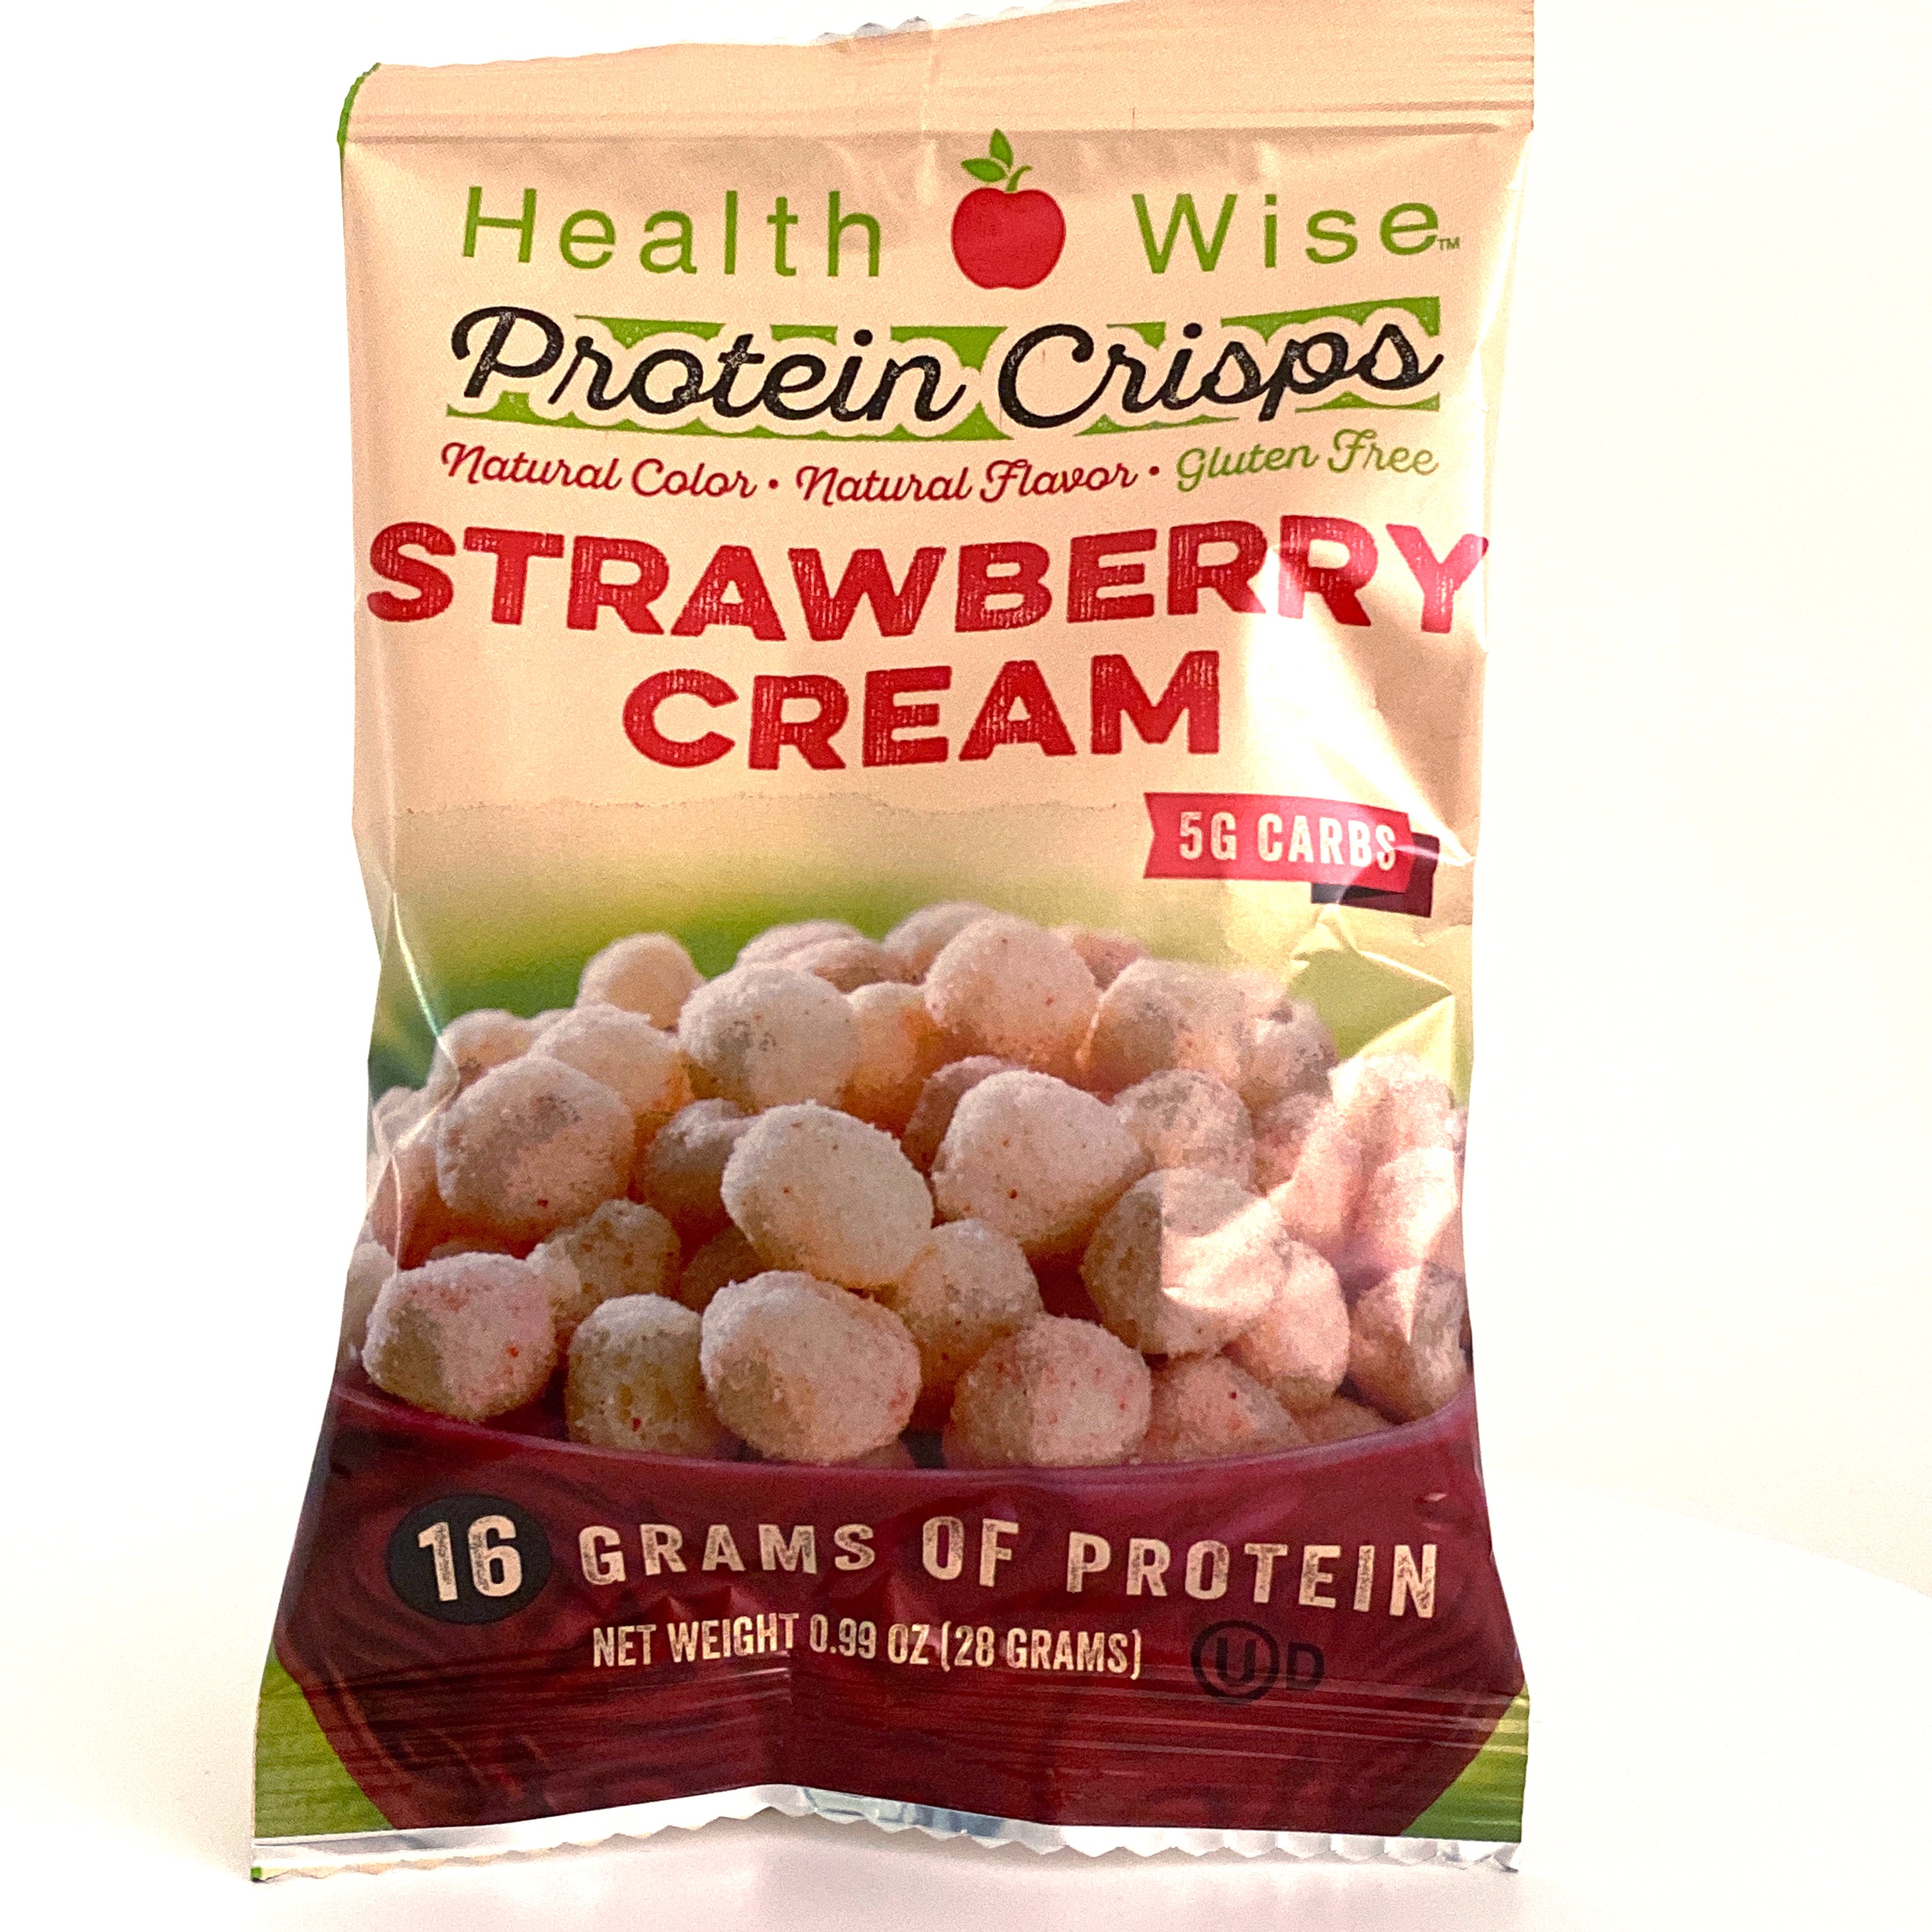 Strawberry Cream VLC Crisps - 16g Protein per bag